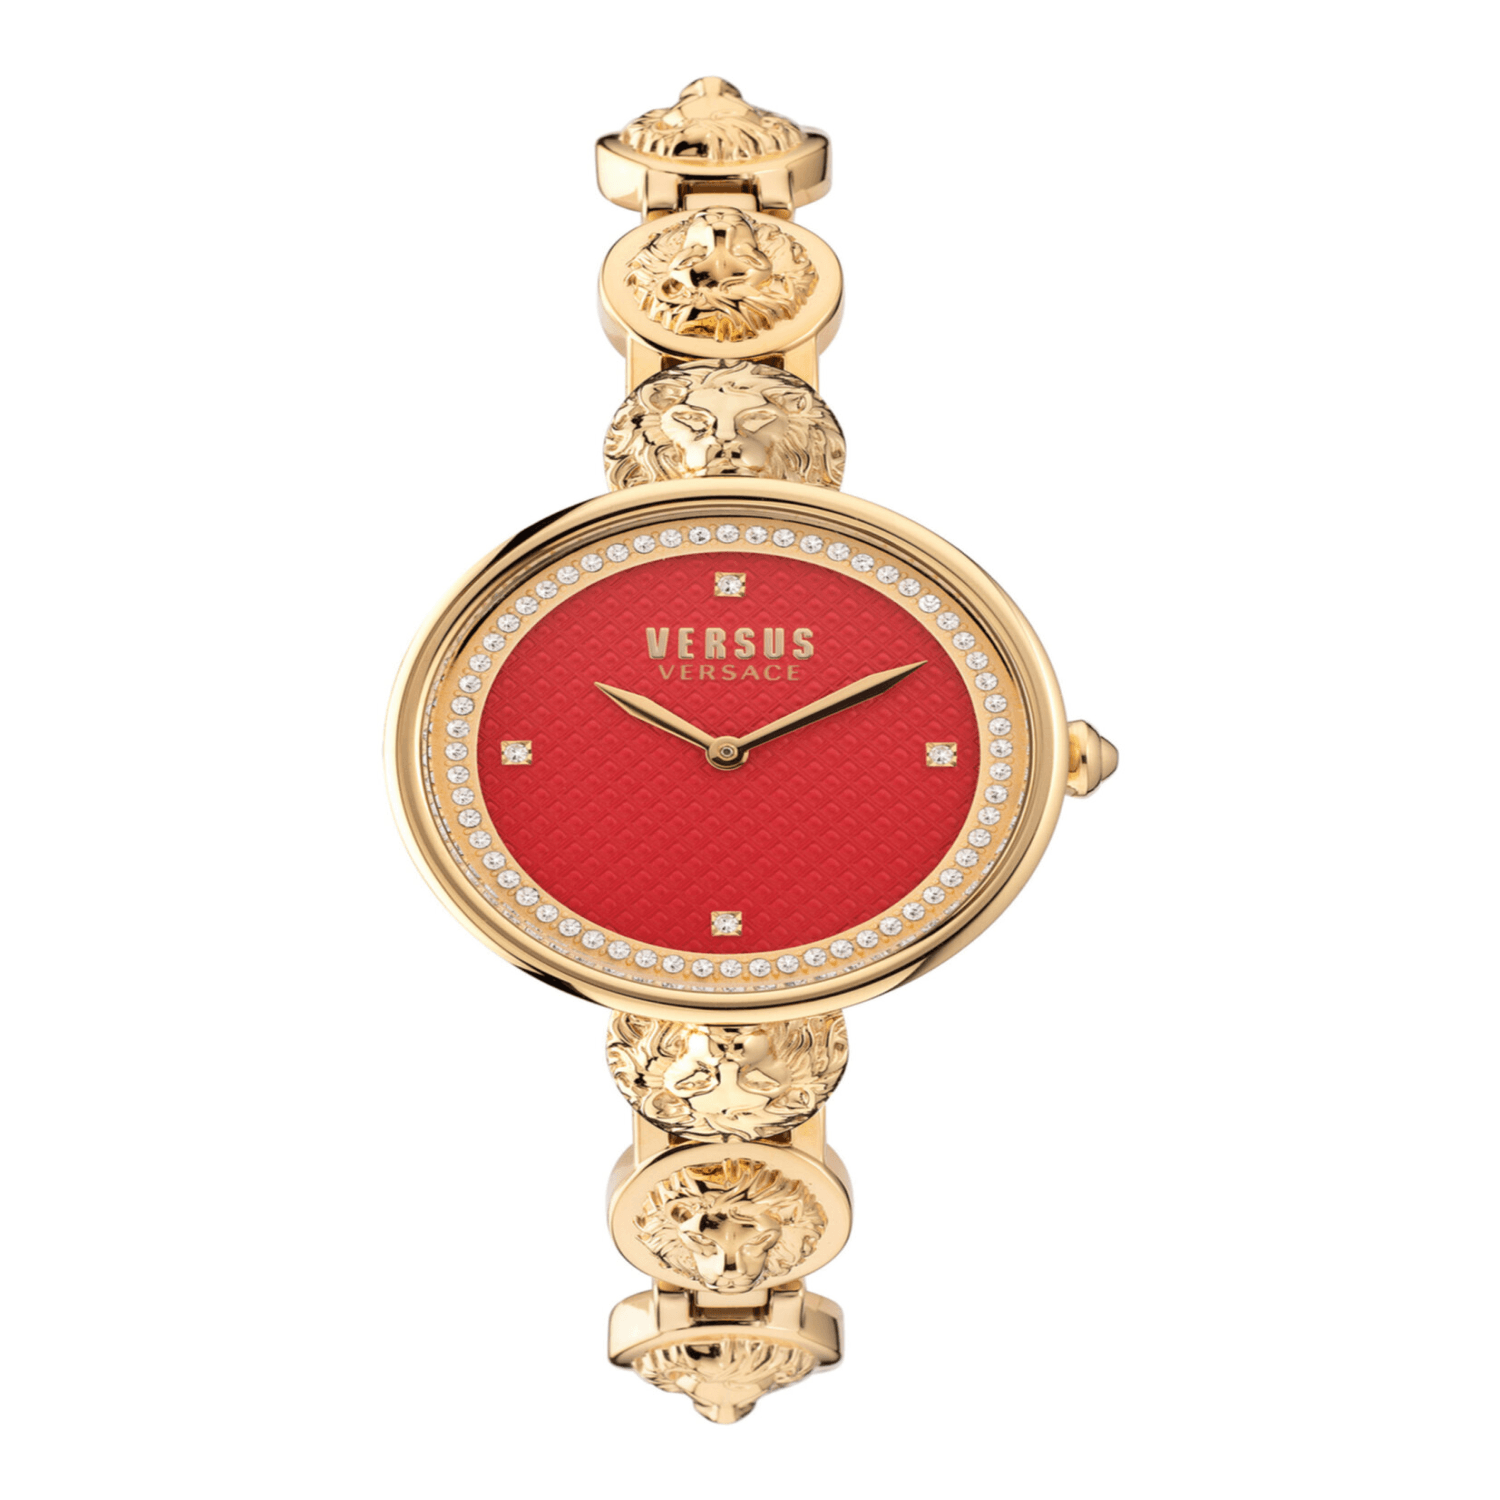 Reloj Versus Versace South Bay Watch VSPZU0821 para Mujer en Oro Amarillo Ip